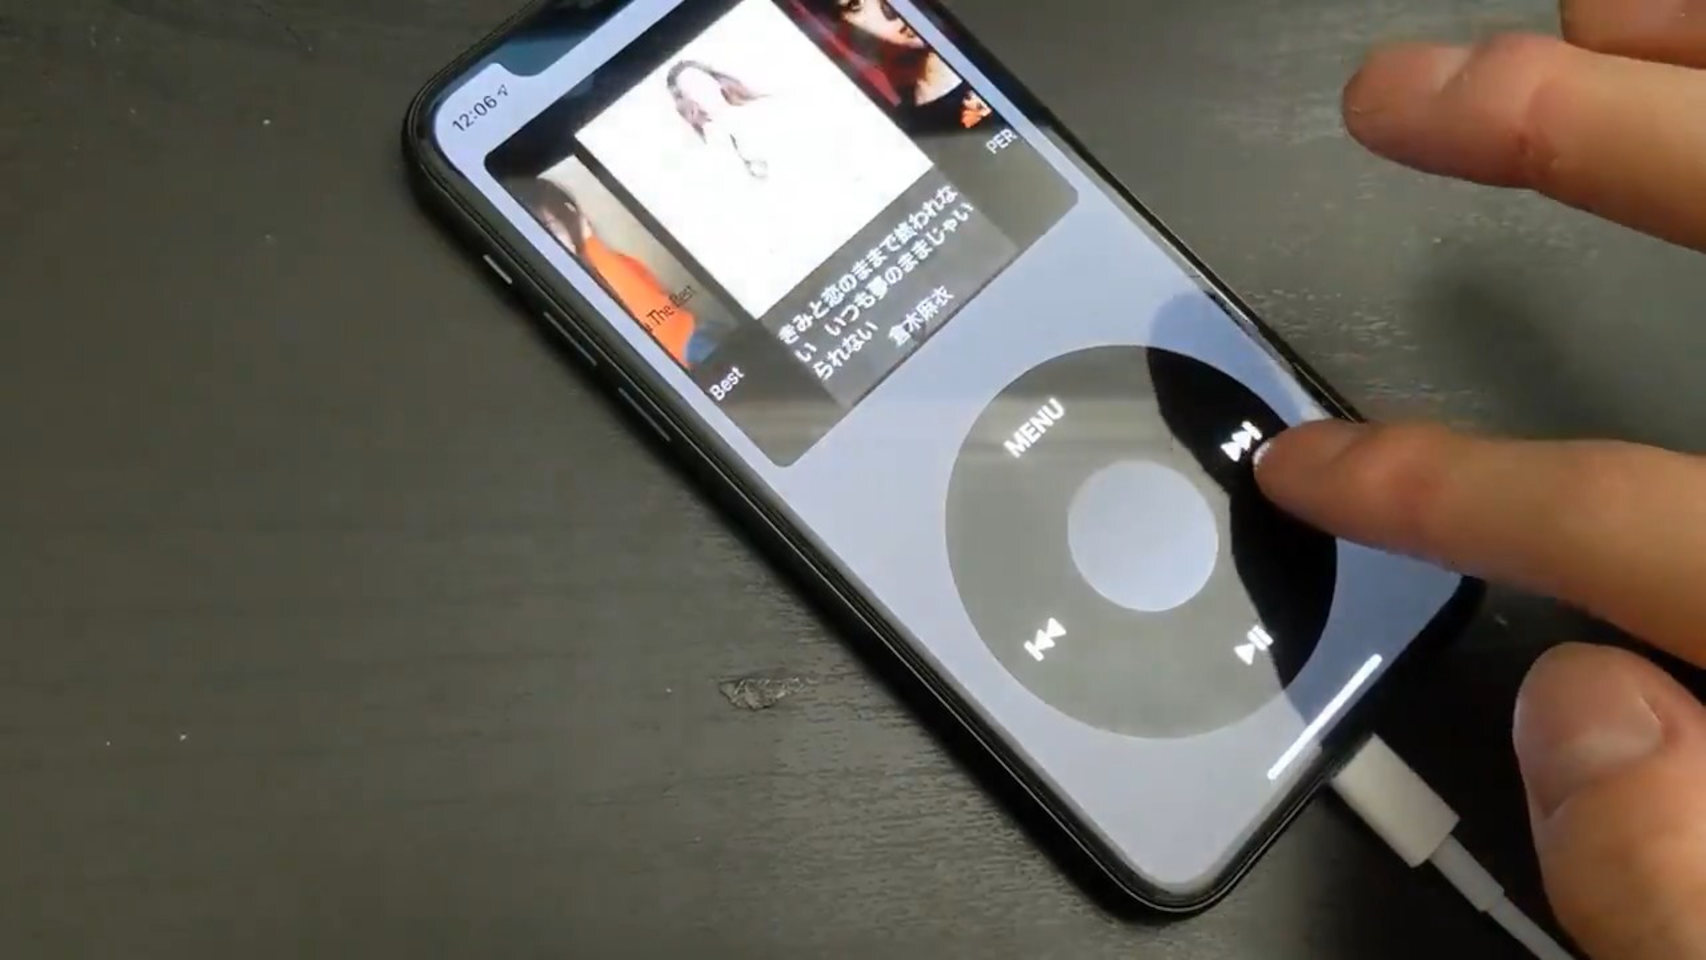 La rueda del iPod vuelve, ahora como app para nostálgicos